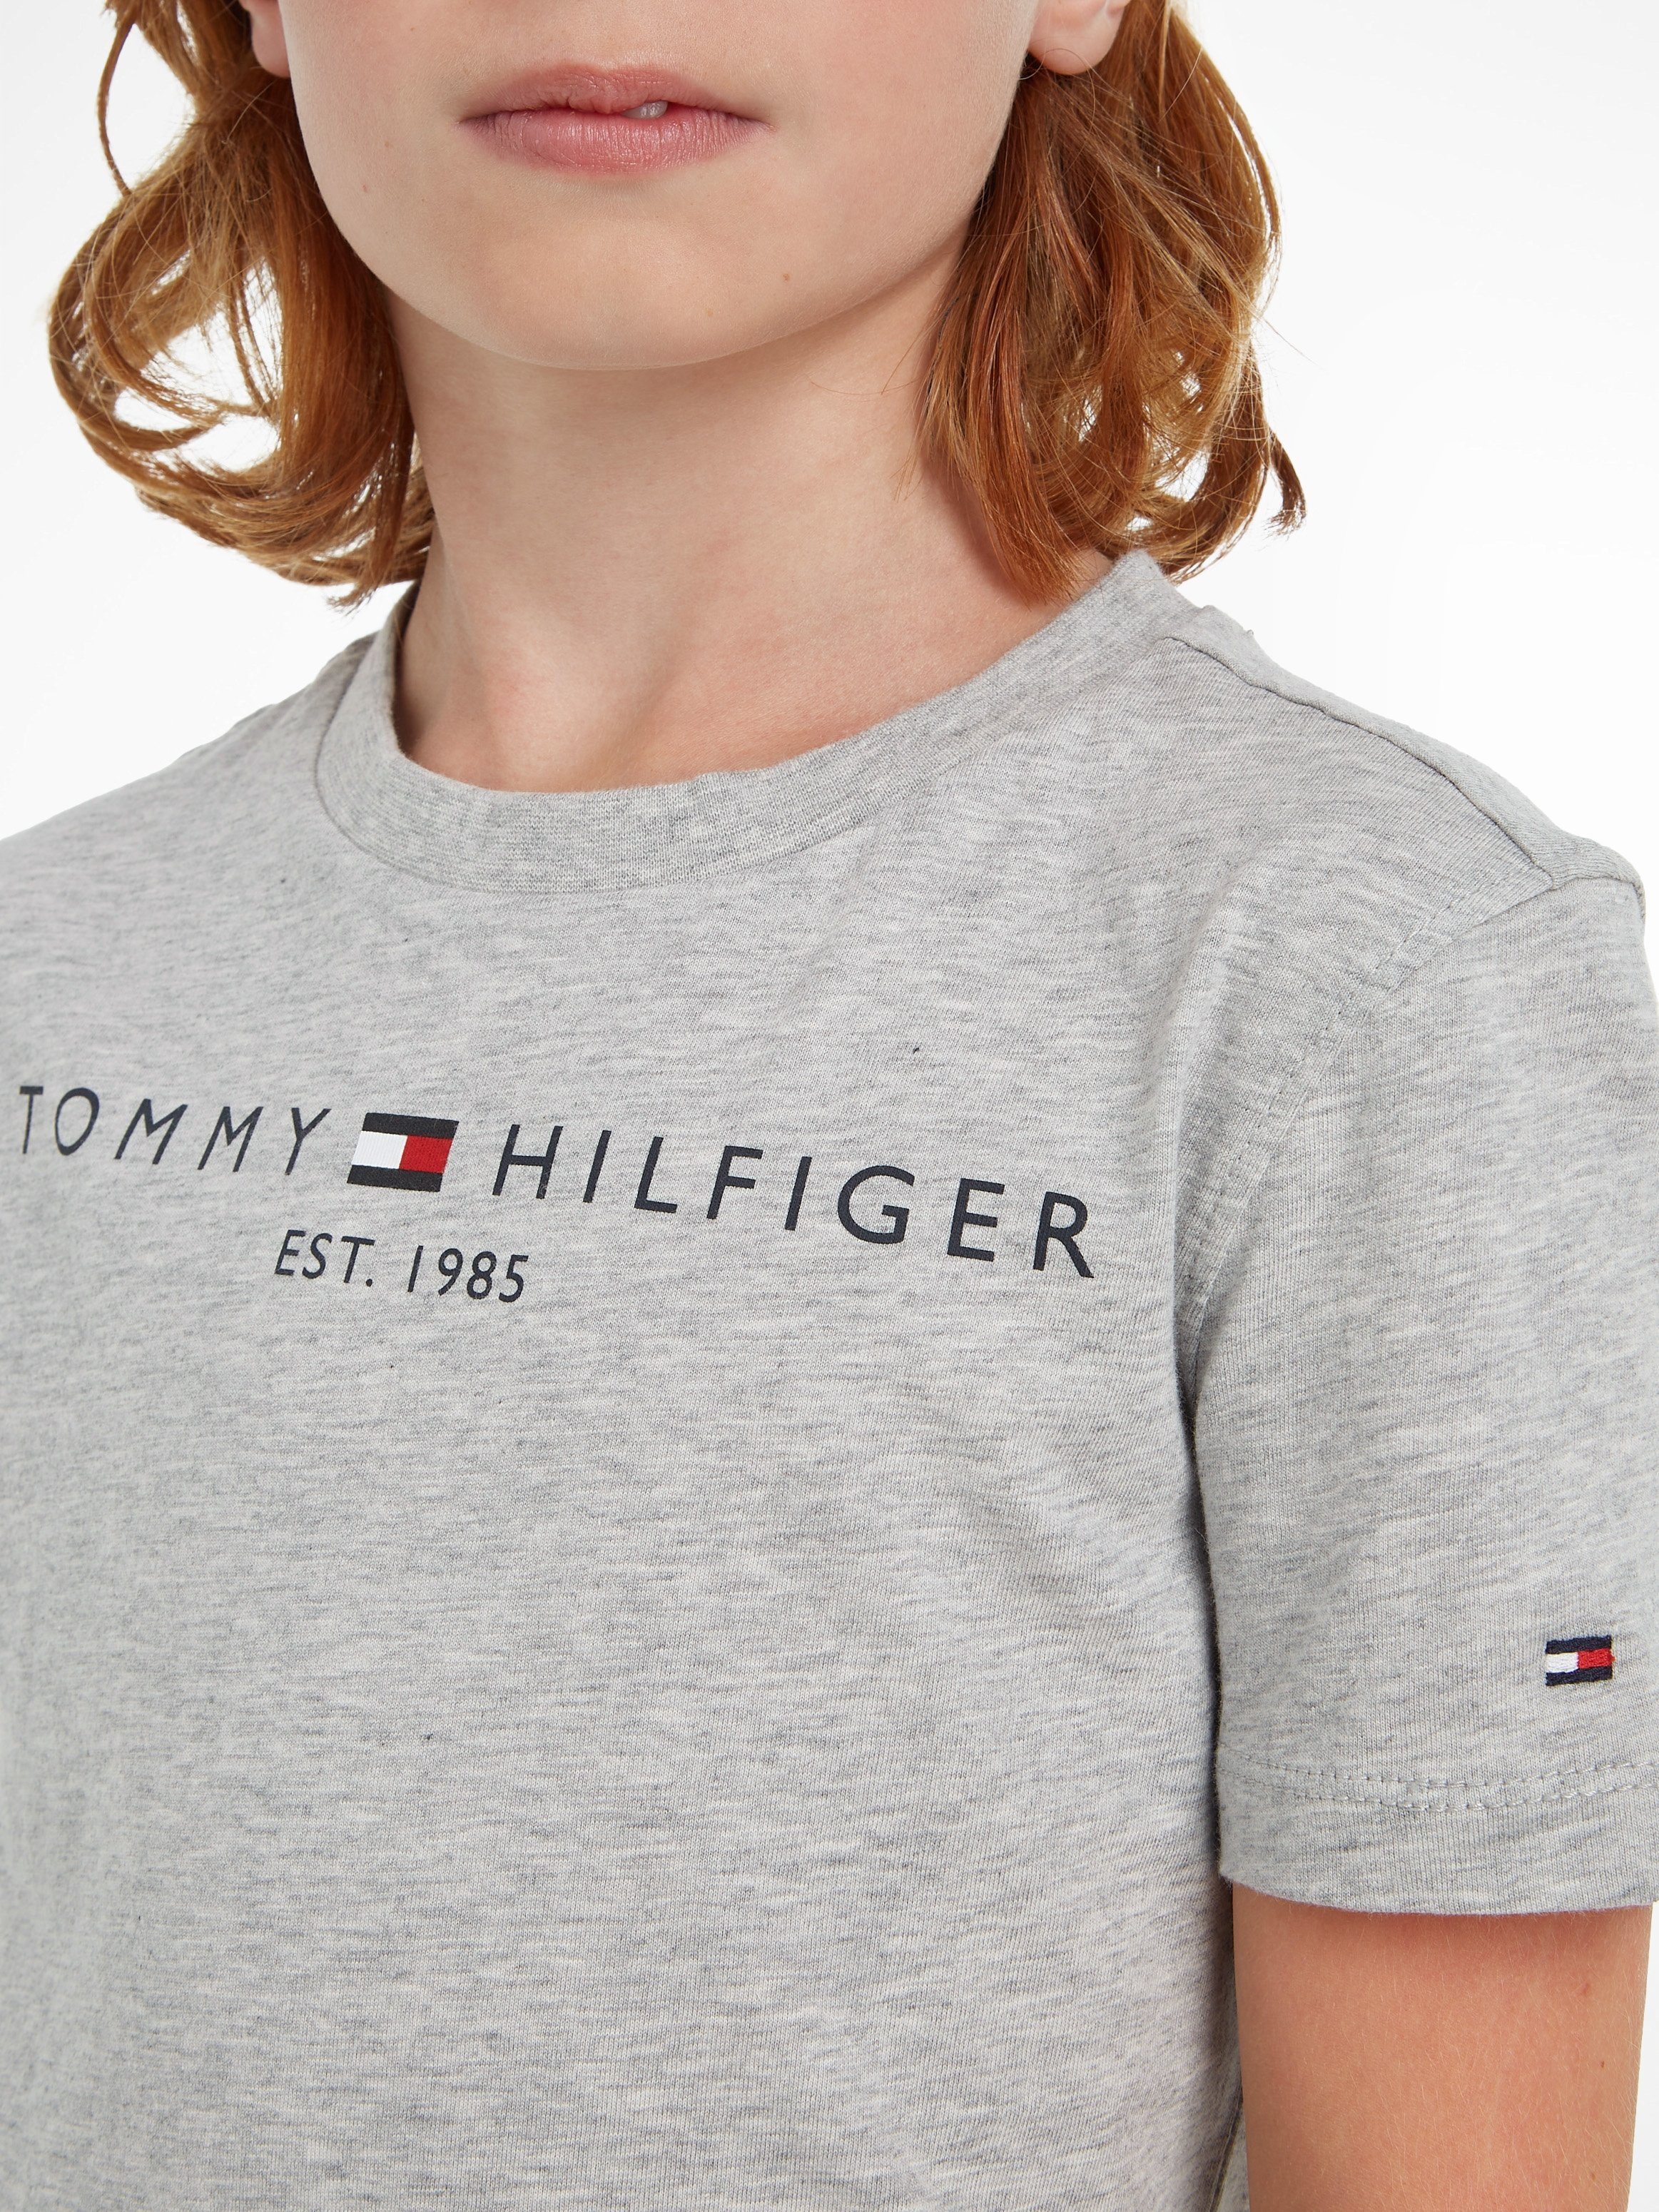 Tommy Hilfiger Jungen MiniMe,für Kinder Kids T-Shirt TEE ESSENTIAL Mädchen Junior und